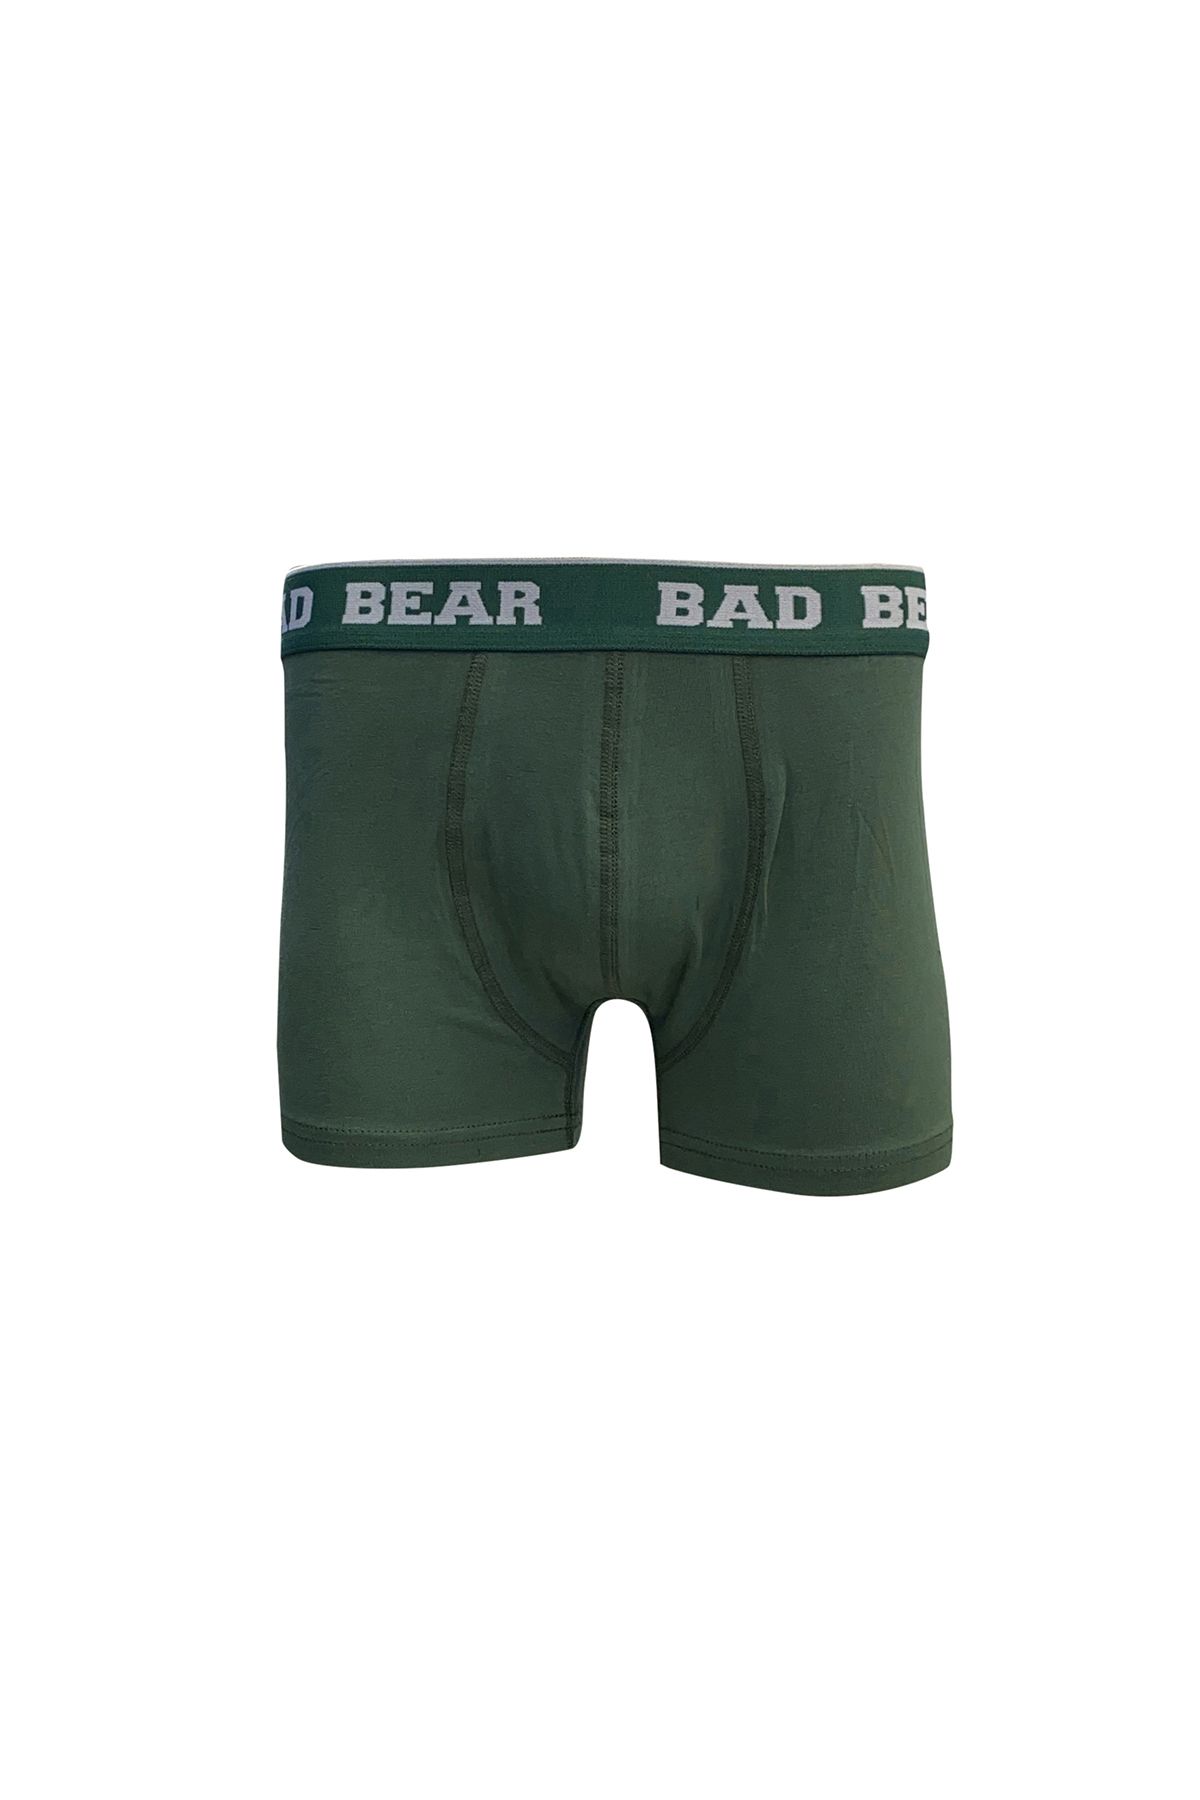 Bad Bear Basic Boxer Erkek Koyu Yeşil Boxer